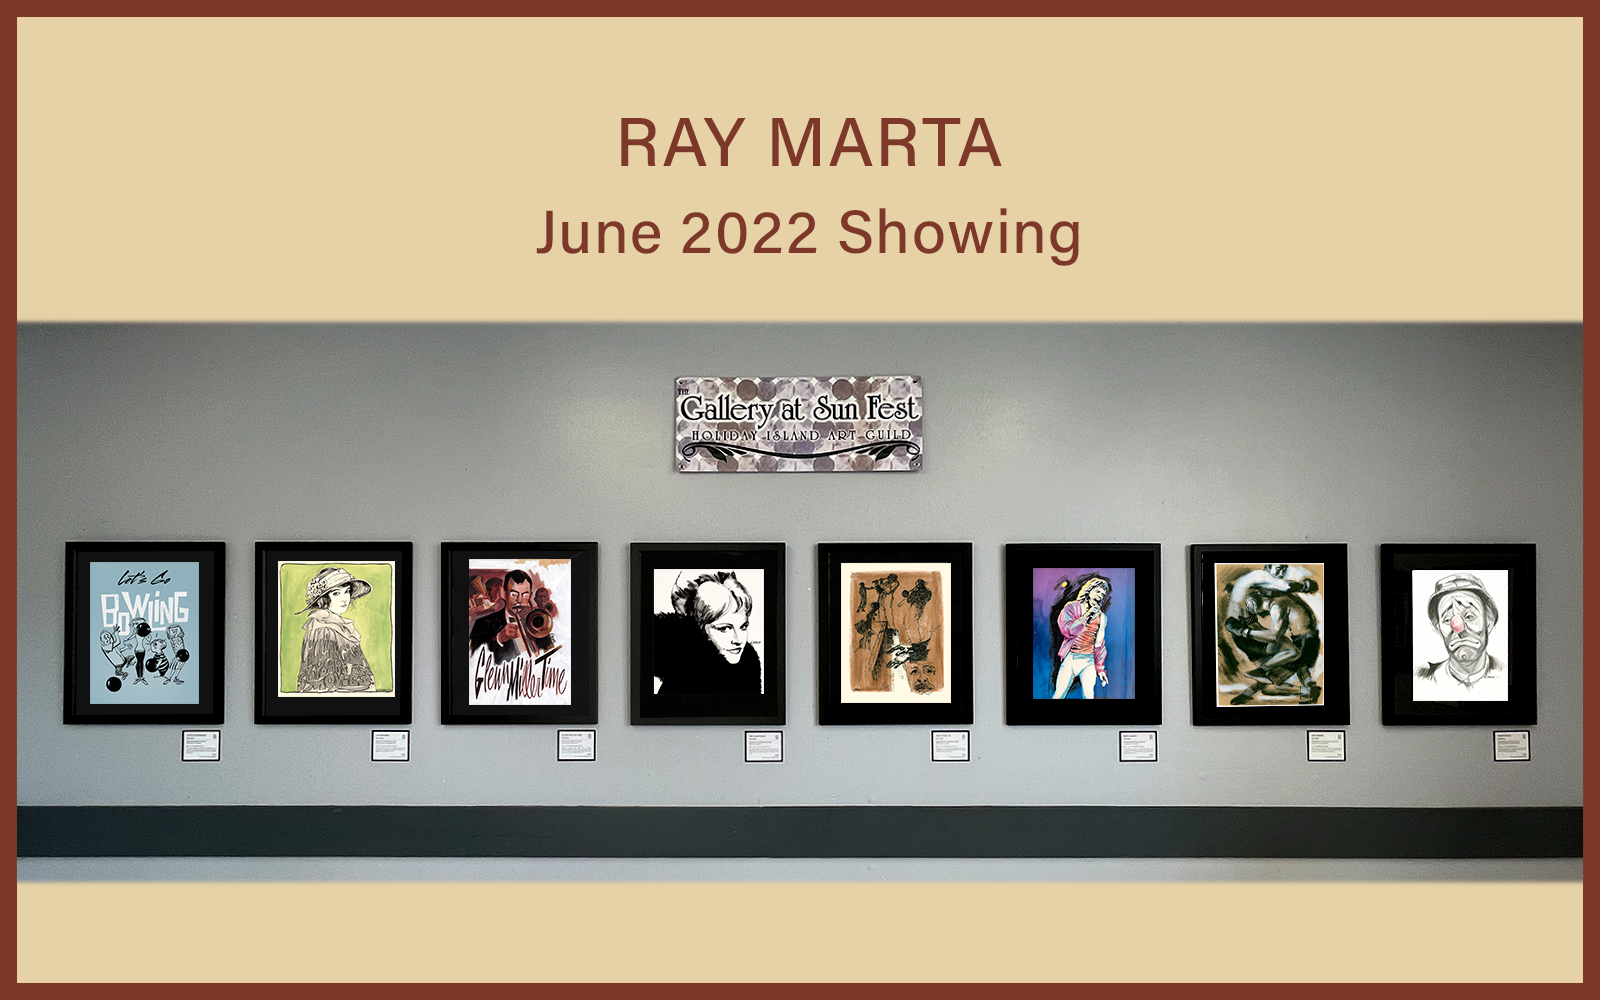 Ray Marta Artwork On Display